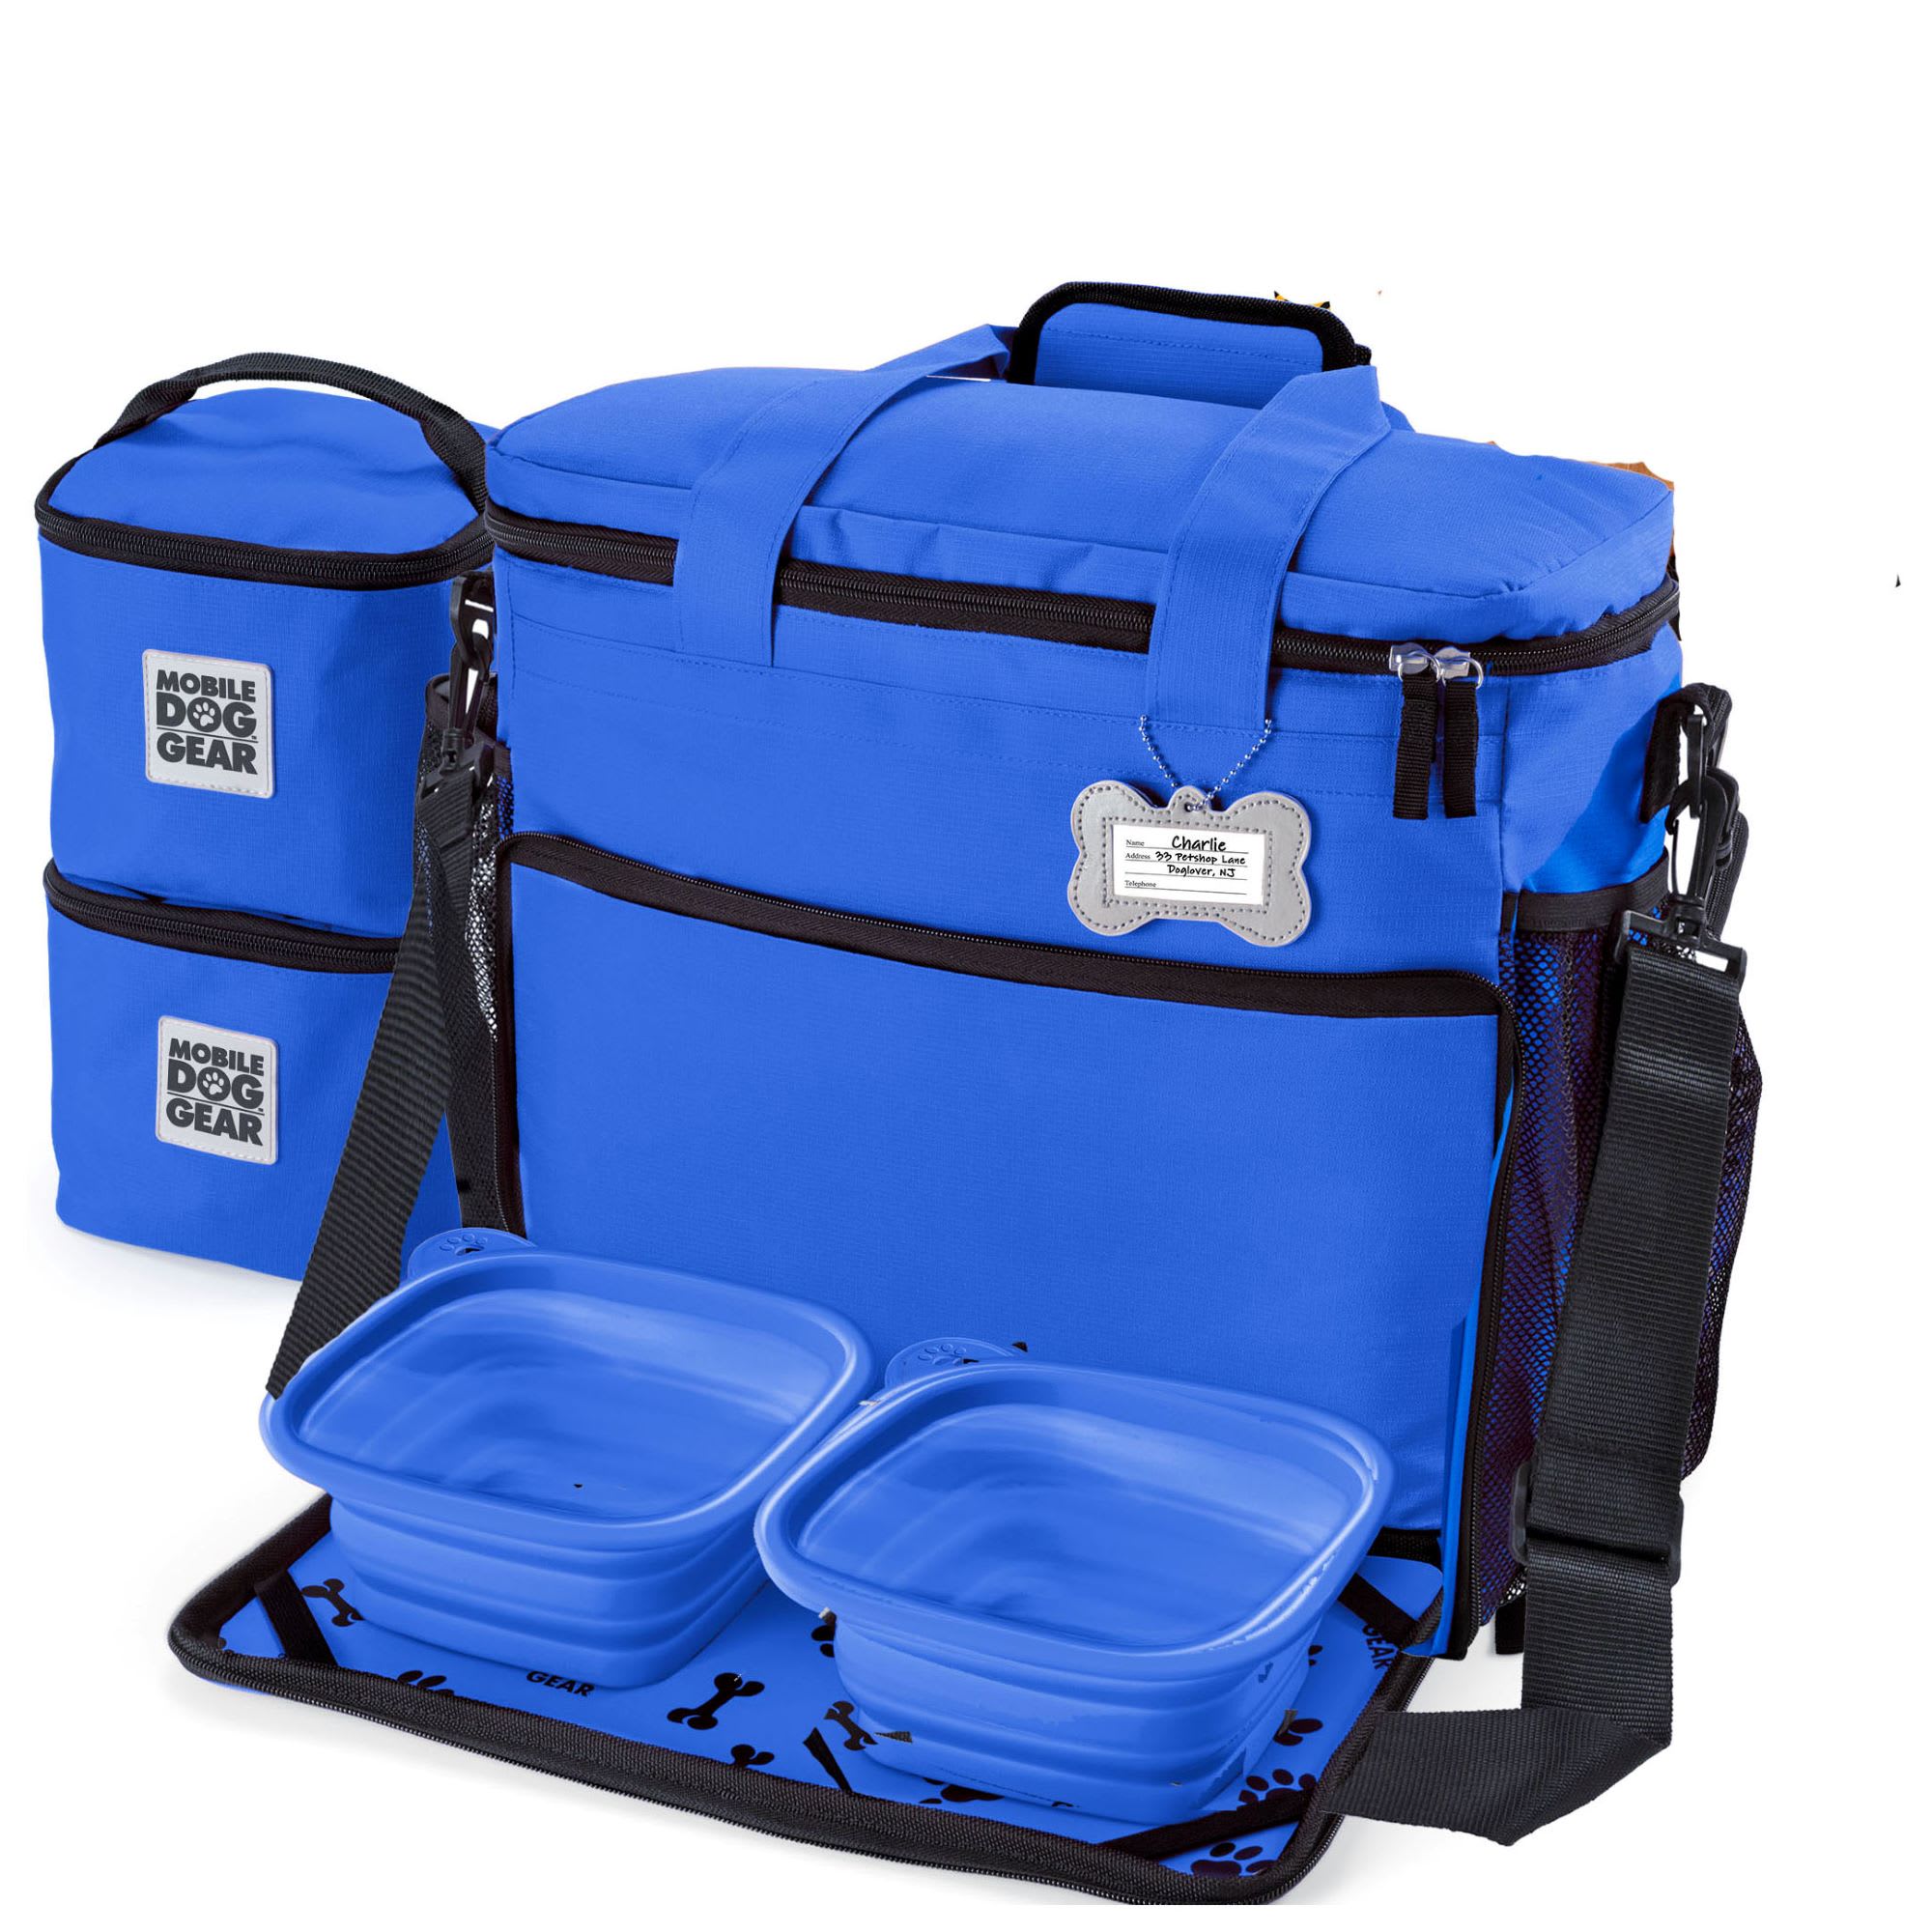 Photos - Backpack Mobile Dog Gear Mobile Dog Gear Blue Week Away Bag, Medium/Large, Blue ODG